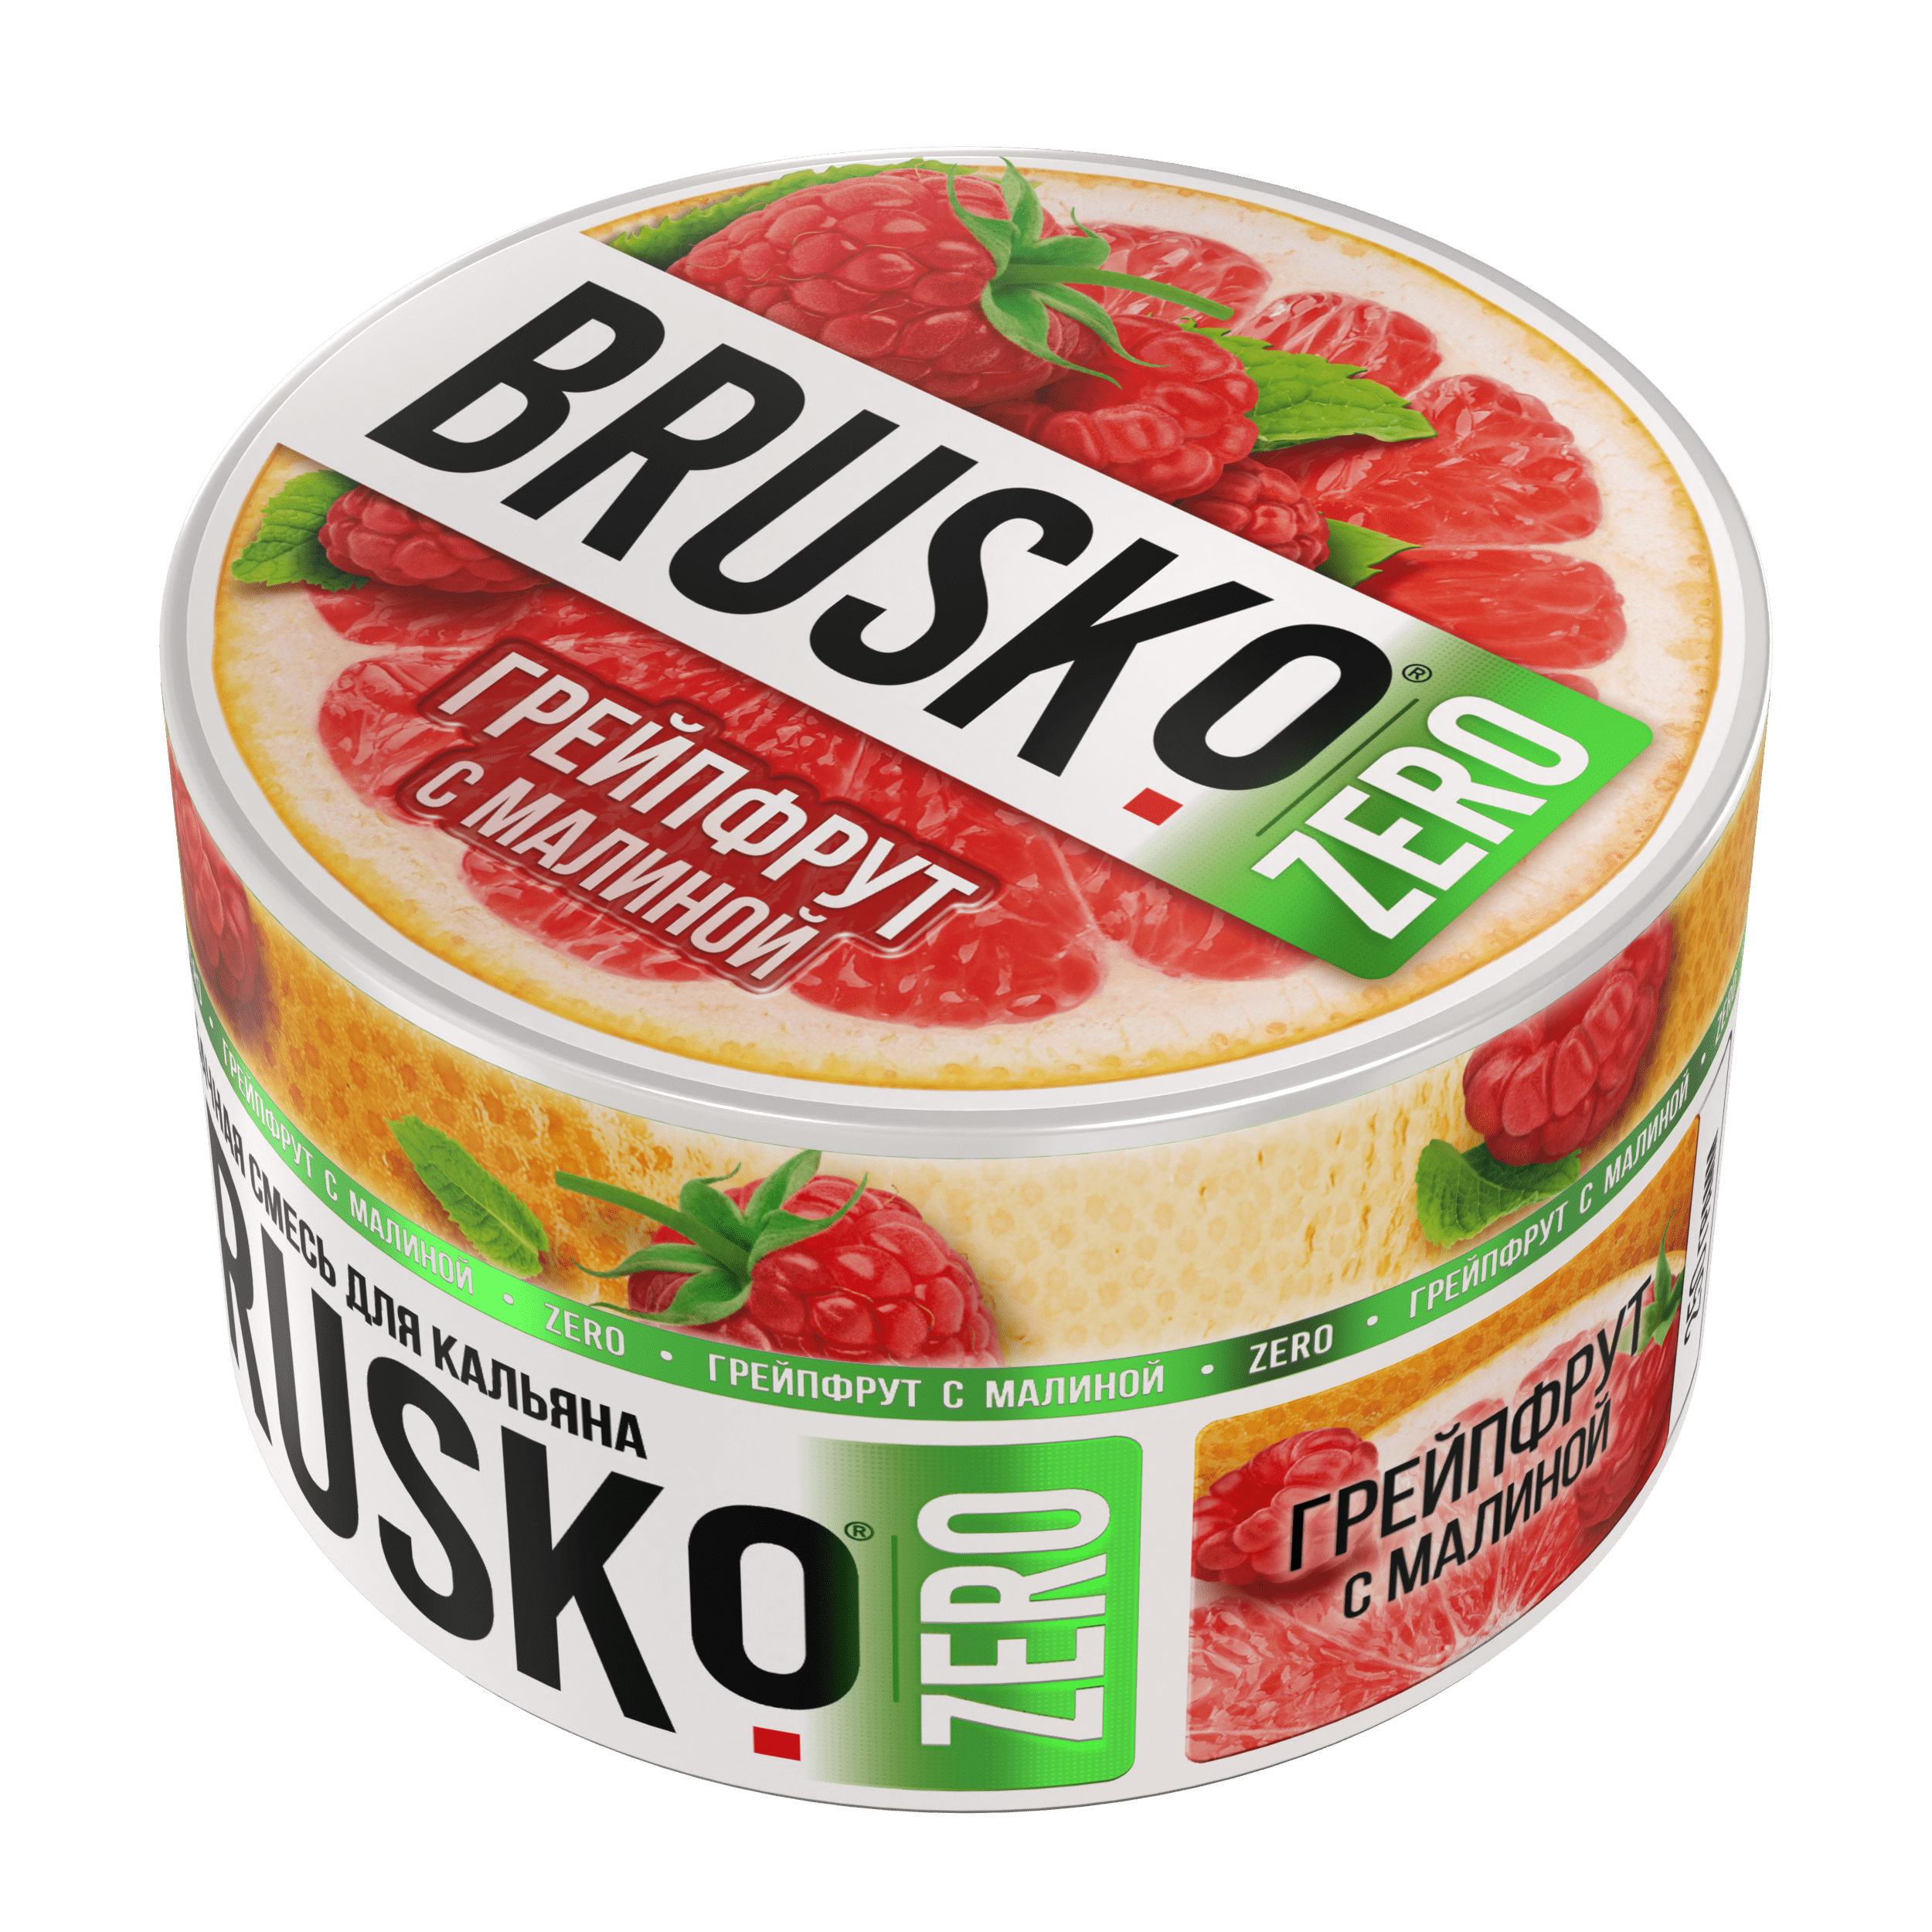 Бестабачная смесь для кальяна BRUSKO, 250 г, Грейпфрут с малиной, Zero (М)